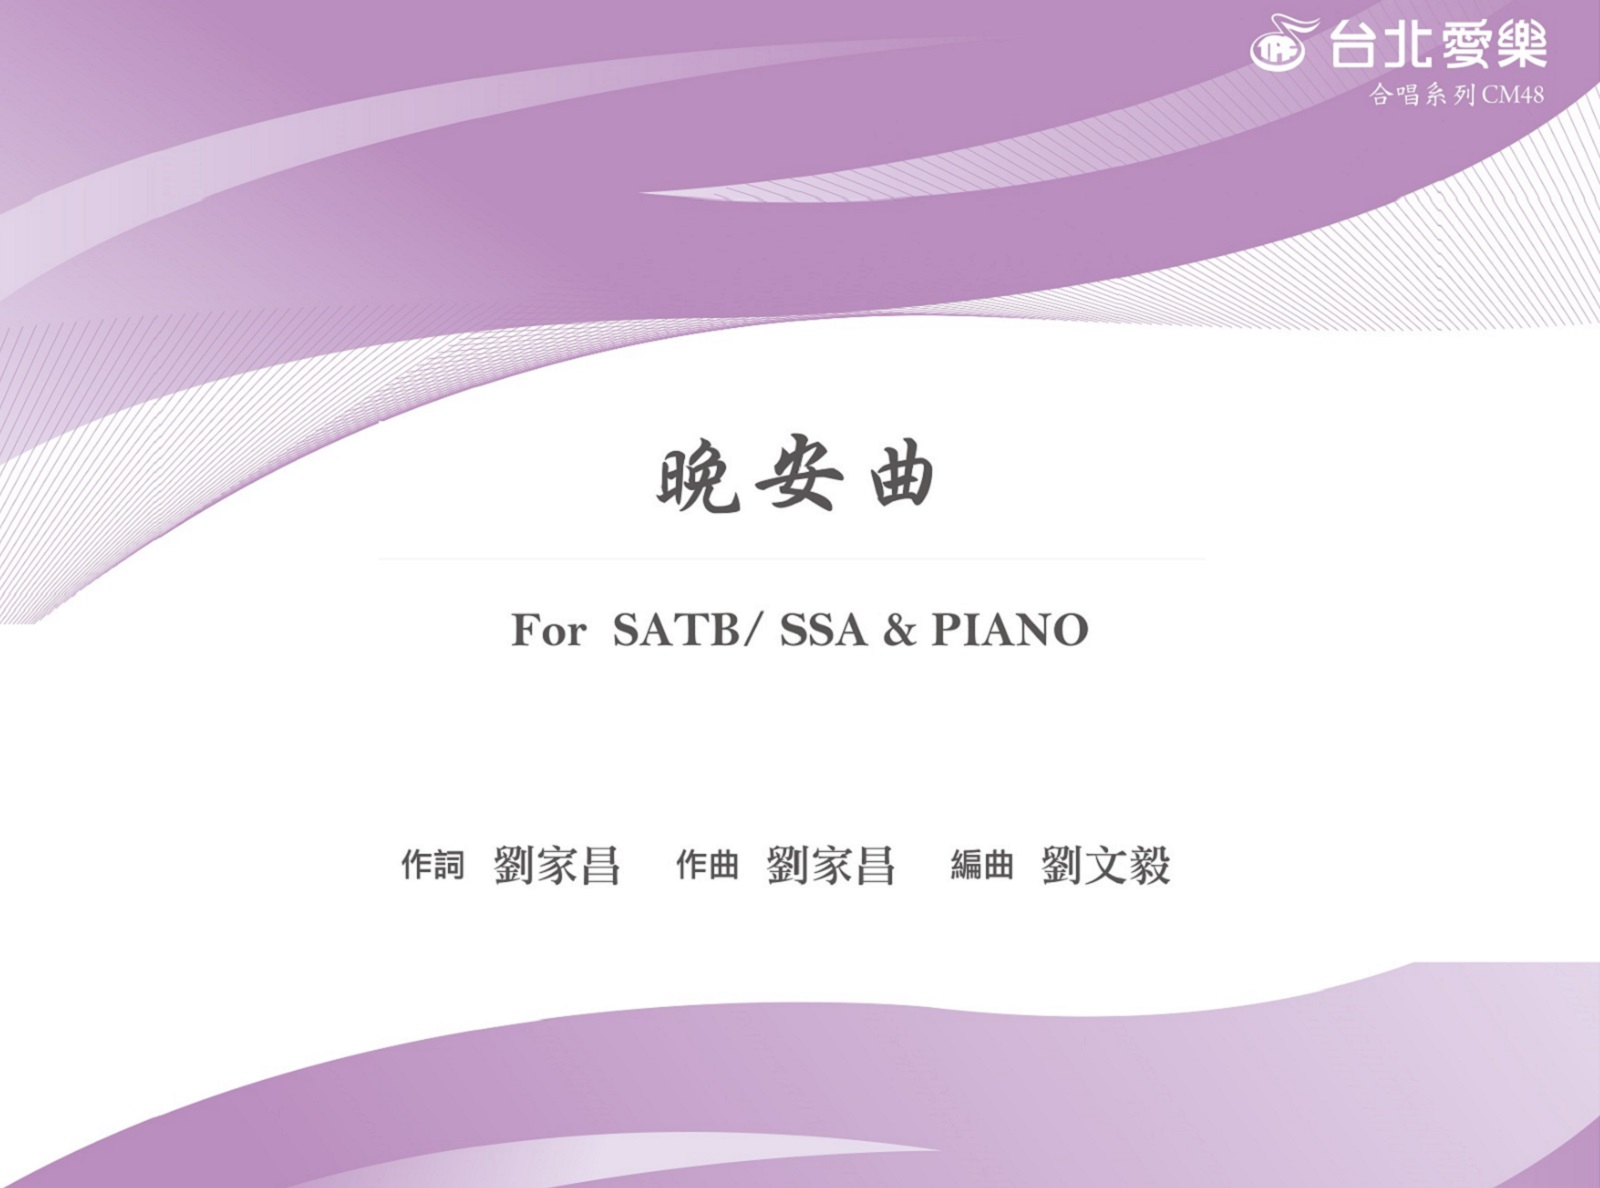 【劉文毅編《晚安曲》】For SATB/ SSA & PIANO